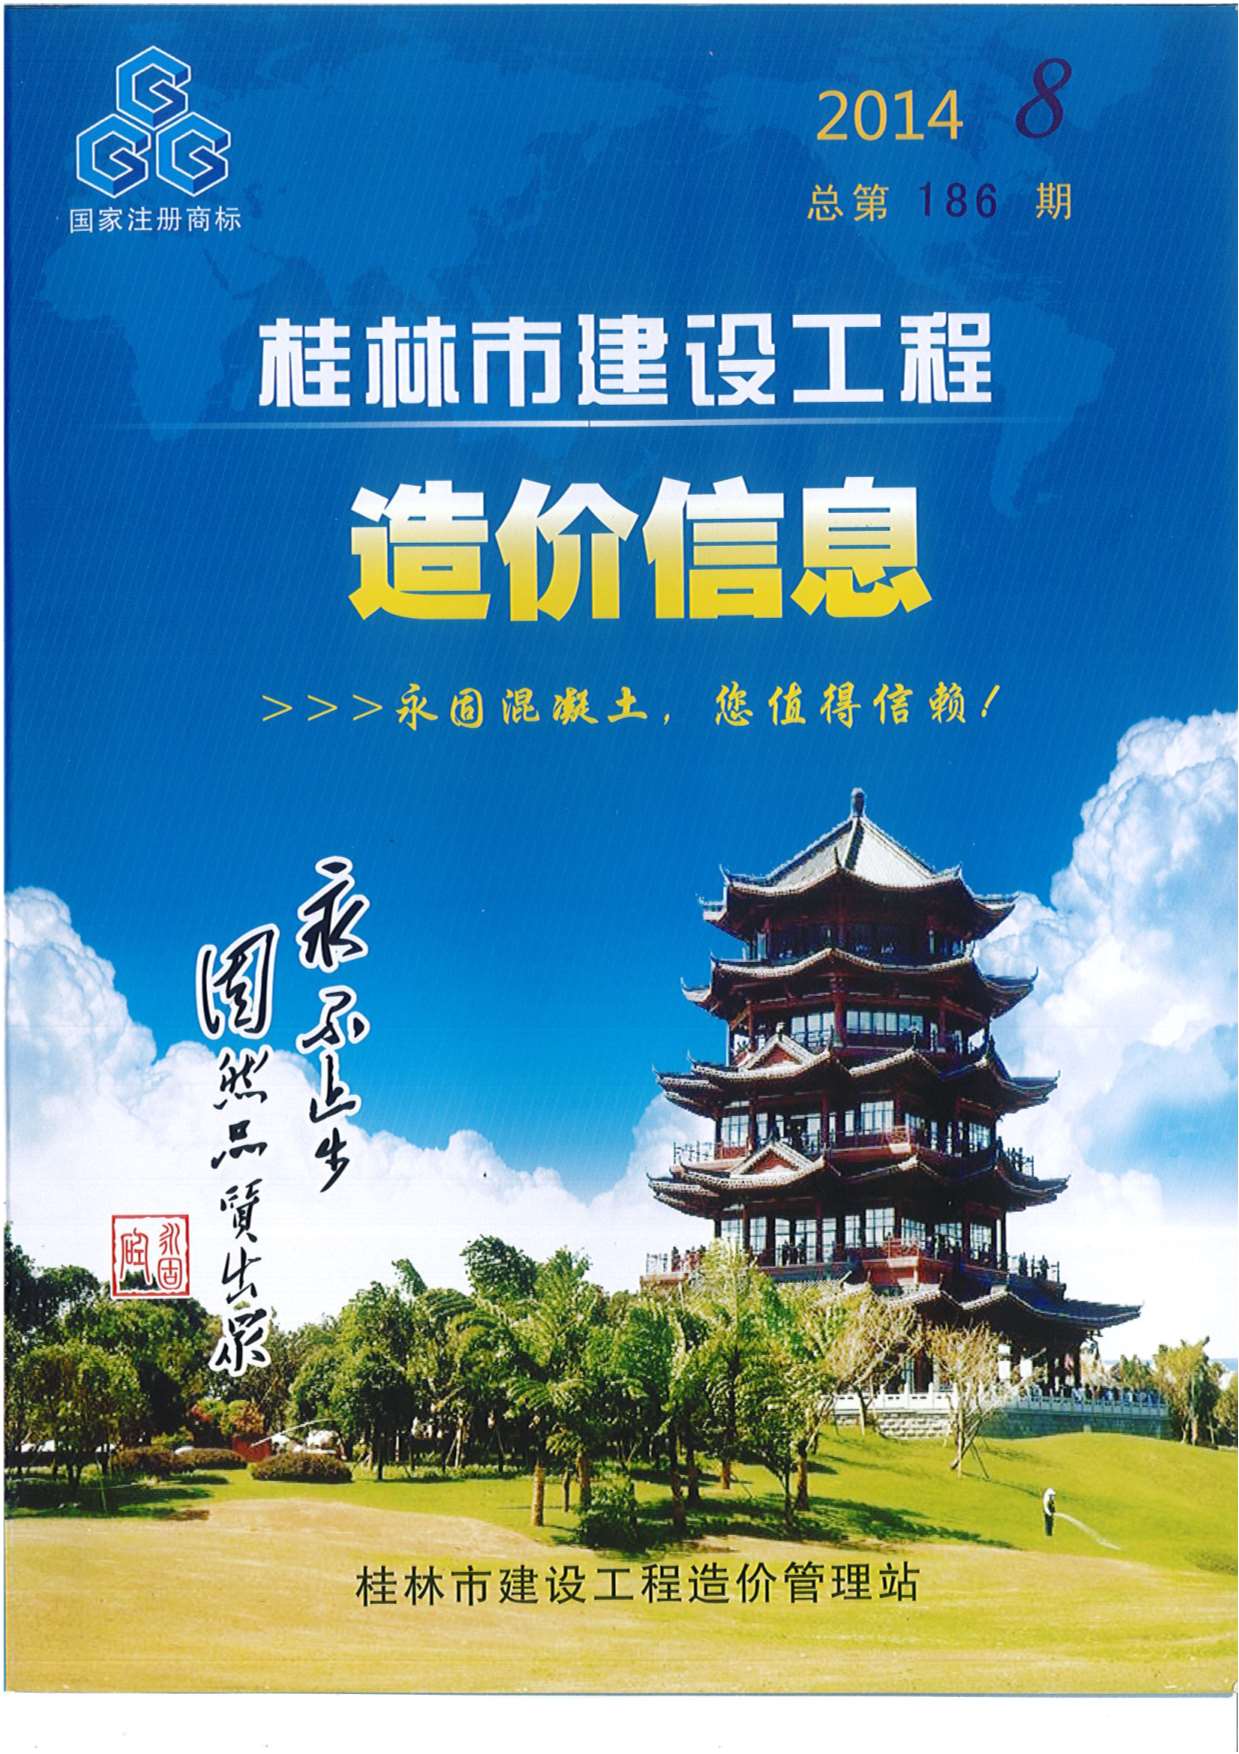 桂林市2014年8月建设工程造价信息